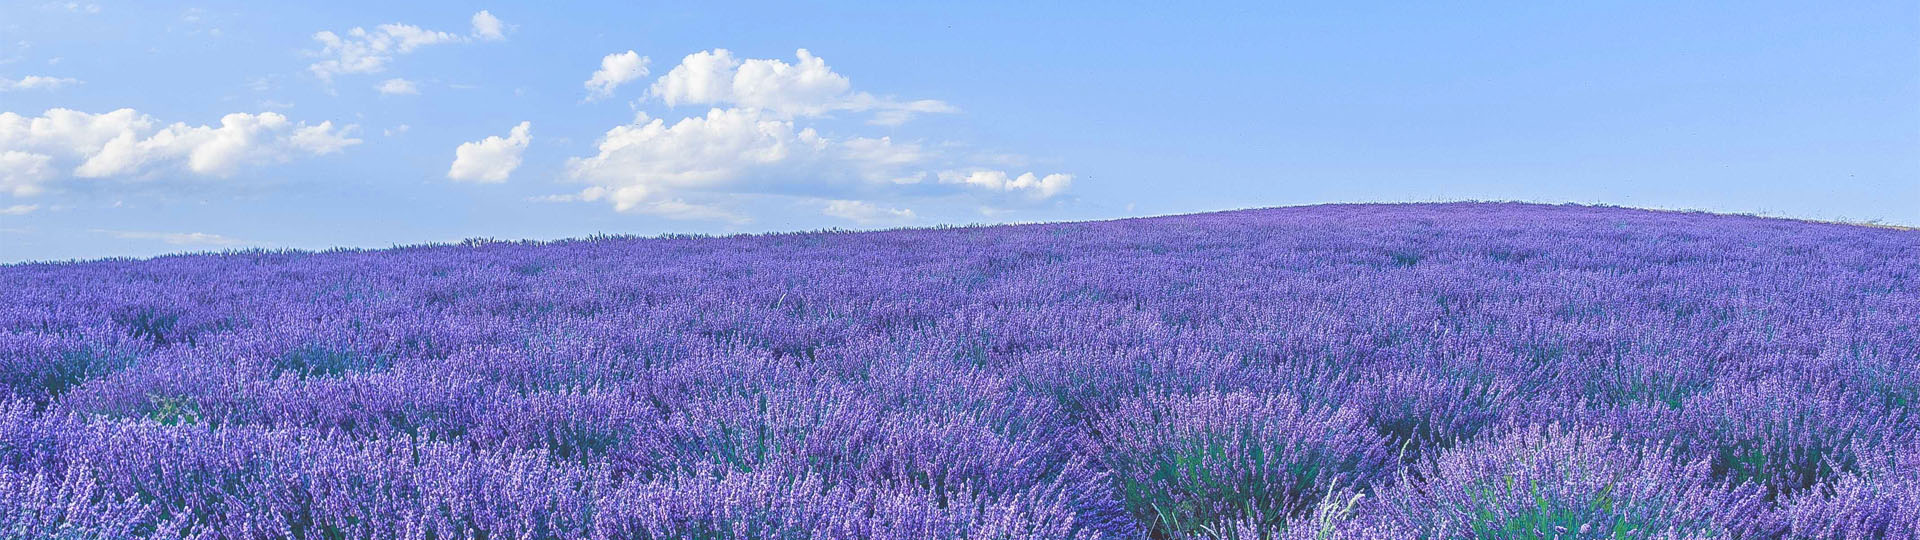 Lavendel-Felder vor blauem Himmel in der Provence